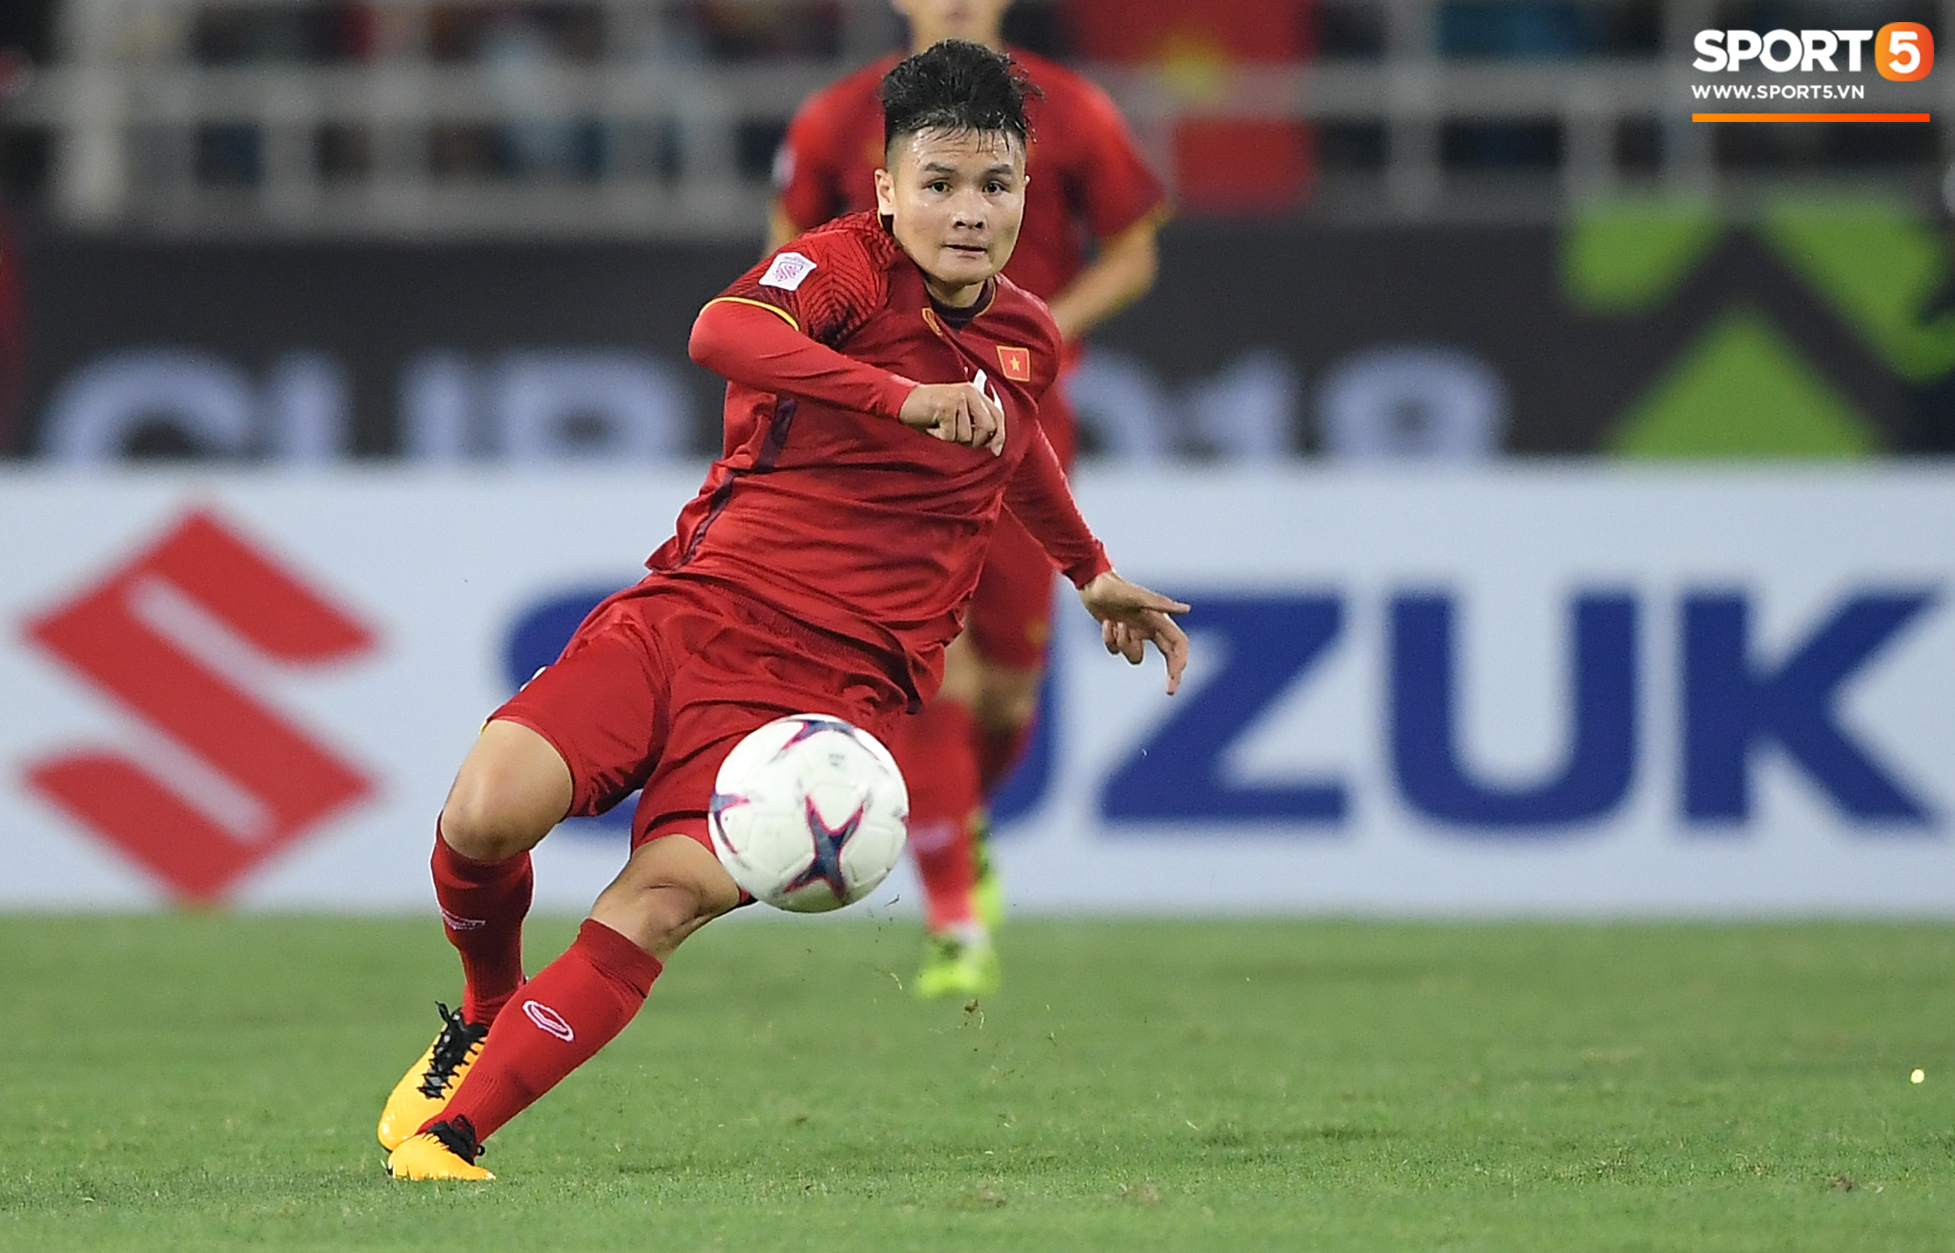 Quang Hải lọt vào danh sách rút gọn đề cử cầu thủ xuất sắc nhất Châu Á 2018-1